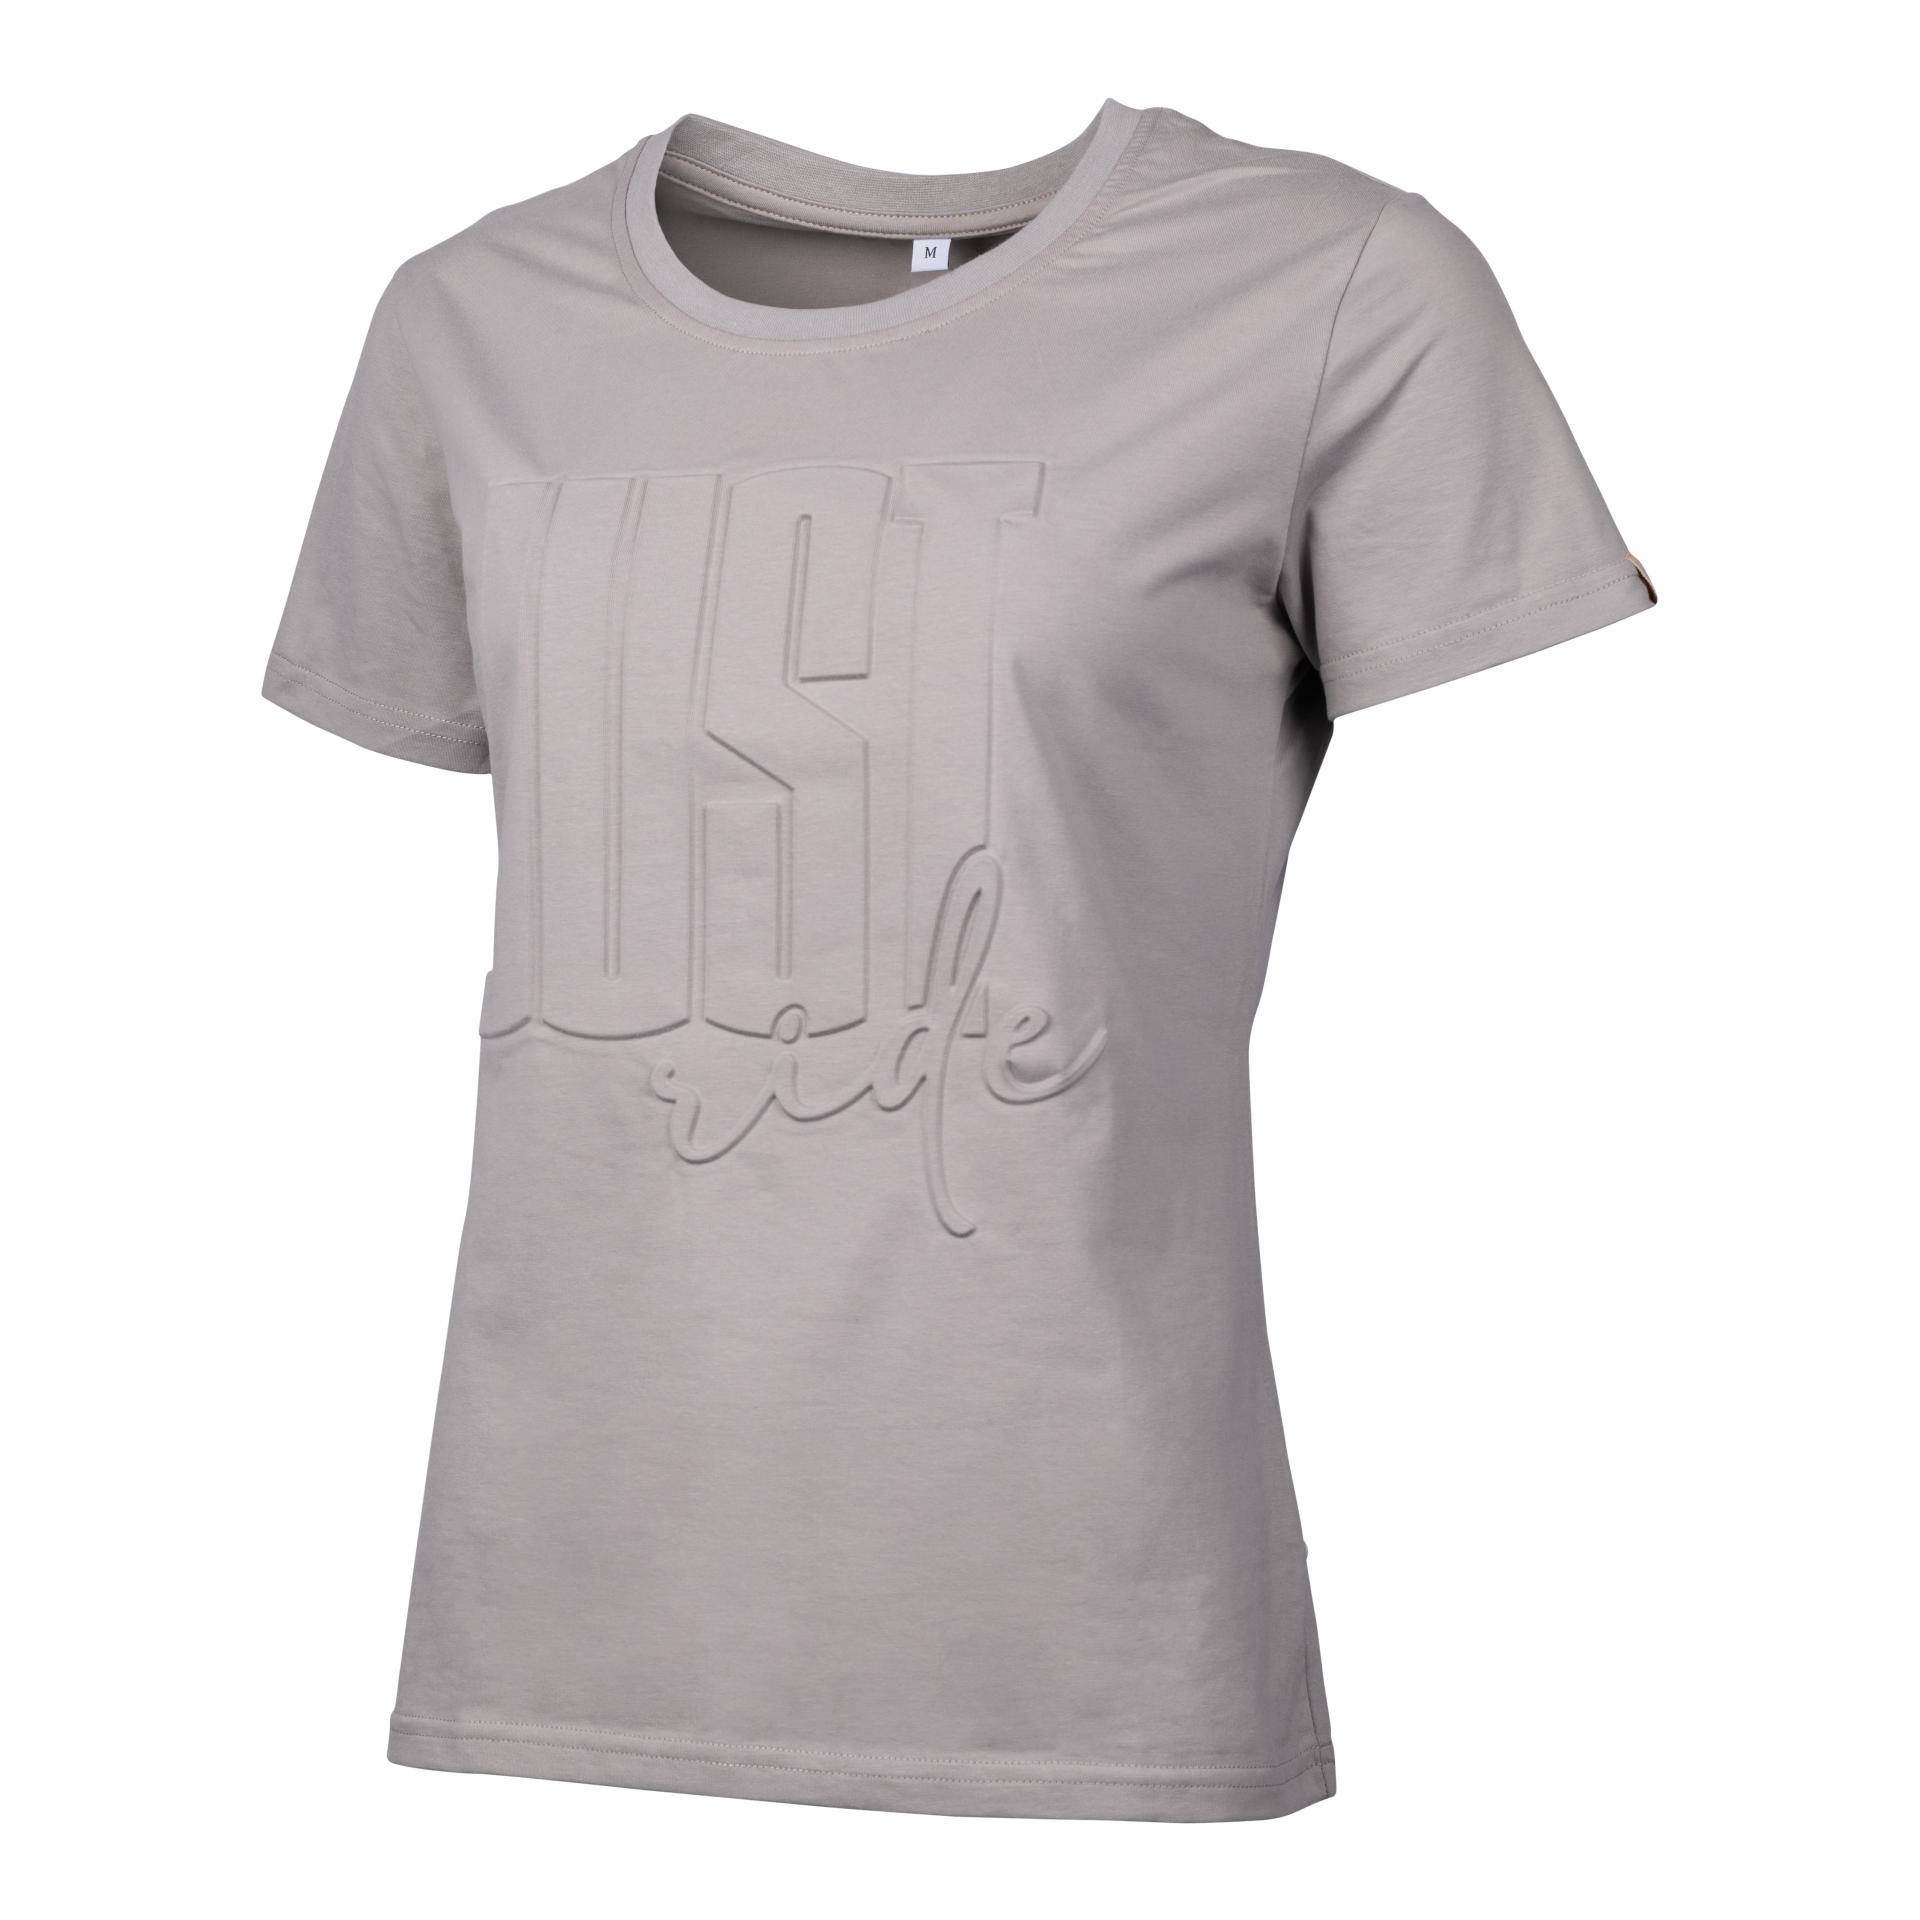 Marengo T-Shirt Just Ride Grösse: XXS, Farbe: Storm Grey von Marengo